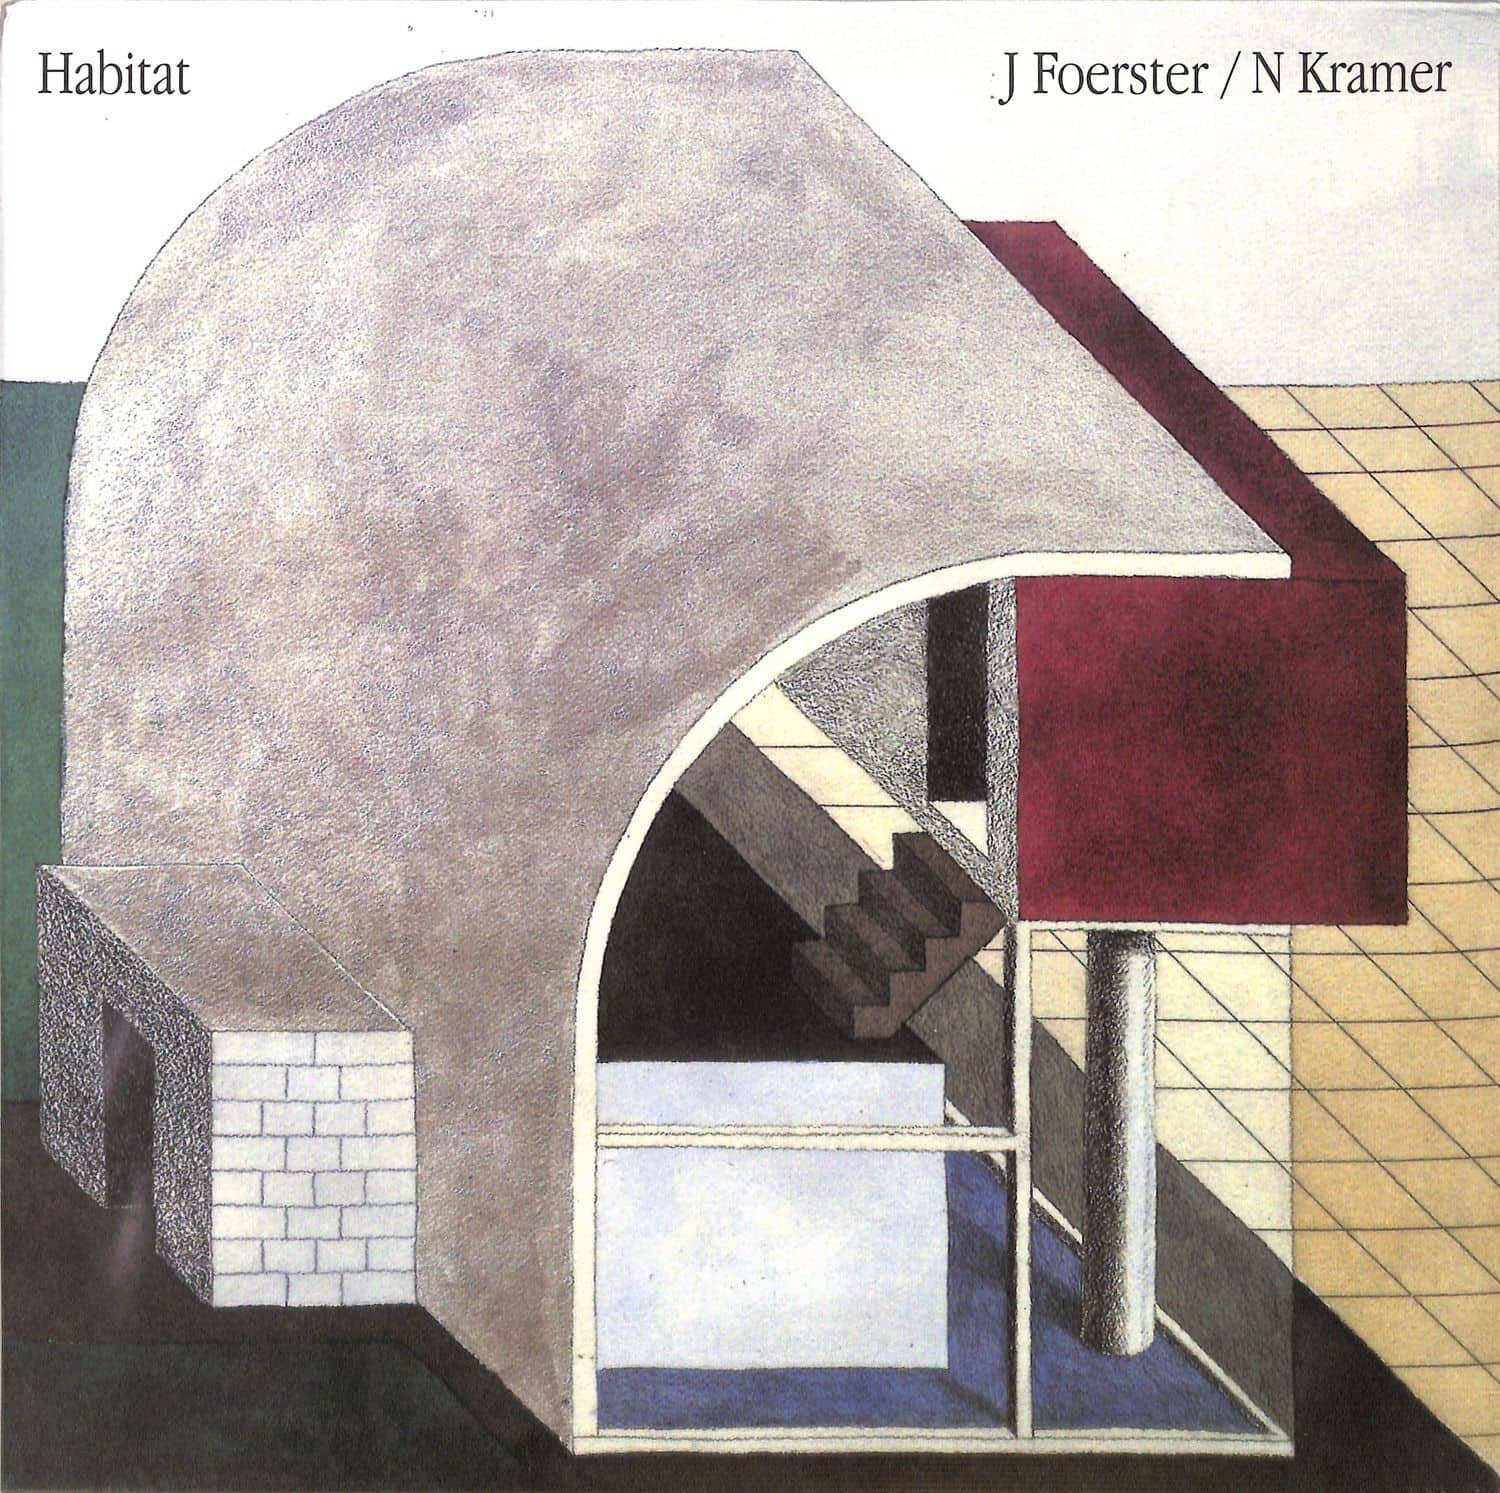 J Foerster / N Kramer - HABITAT 